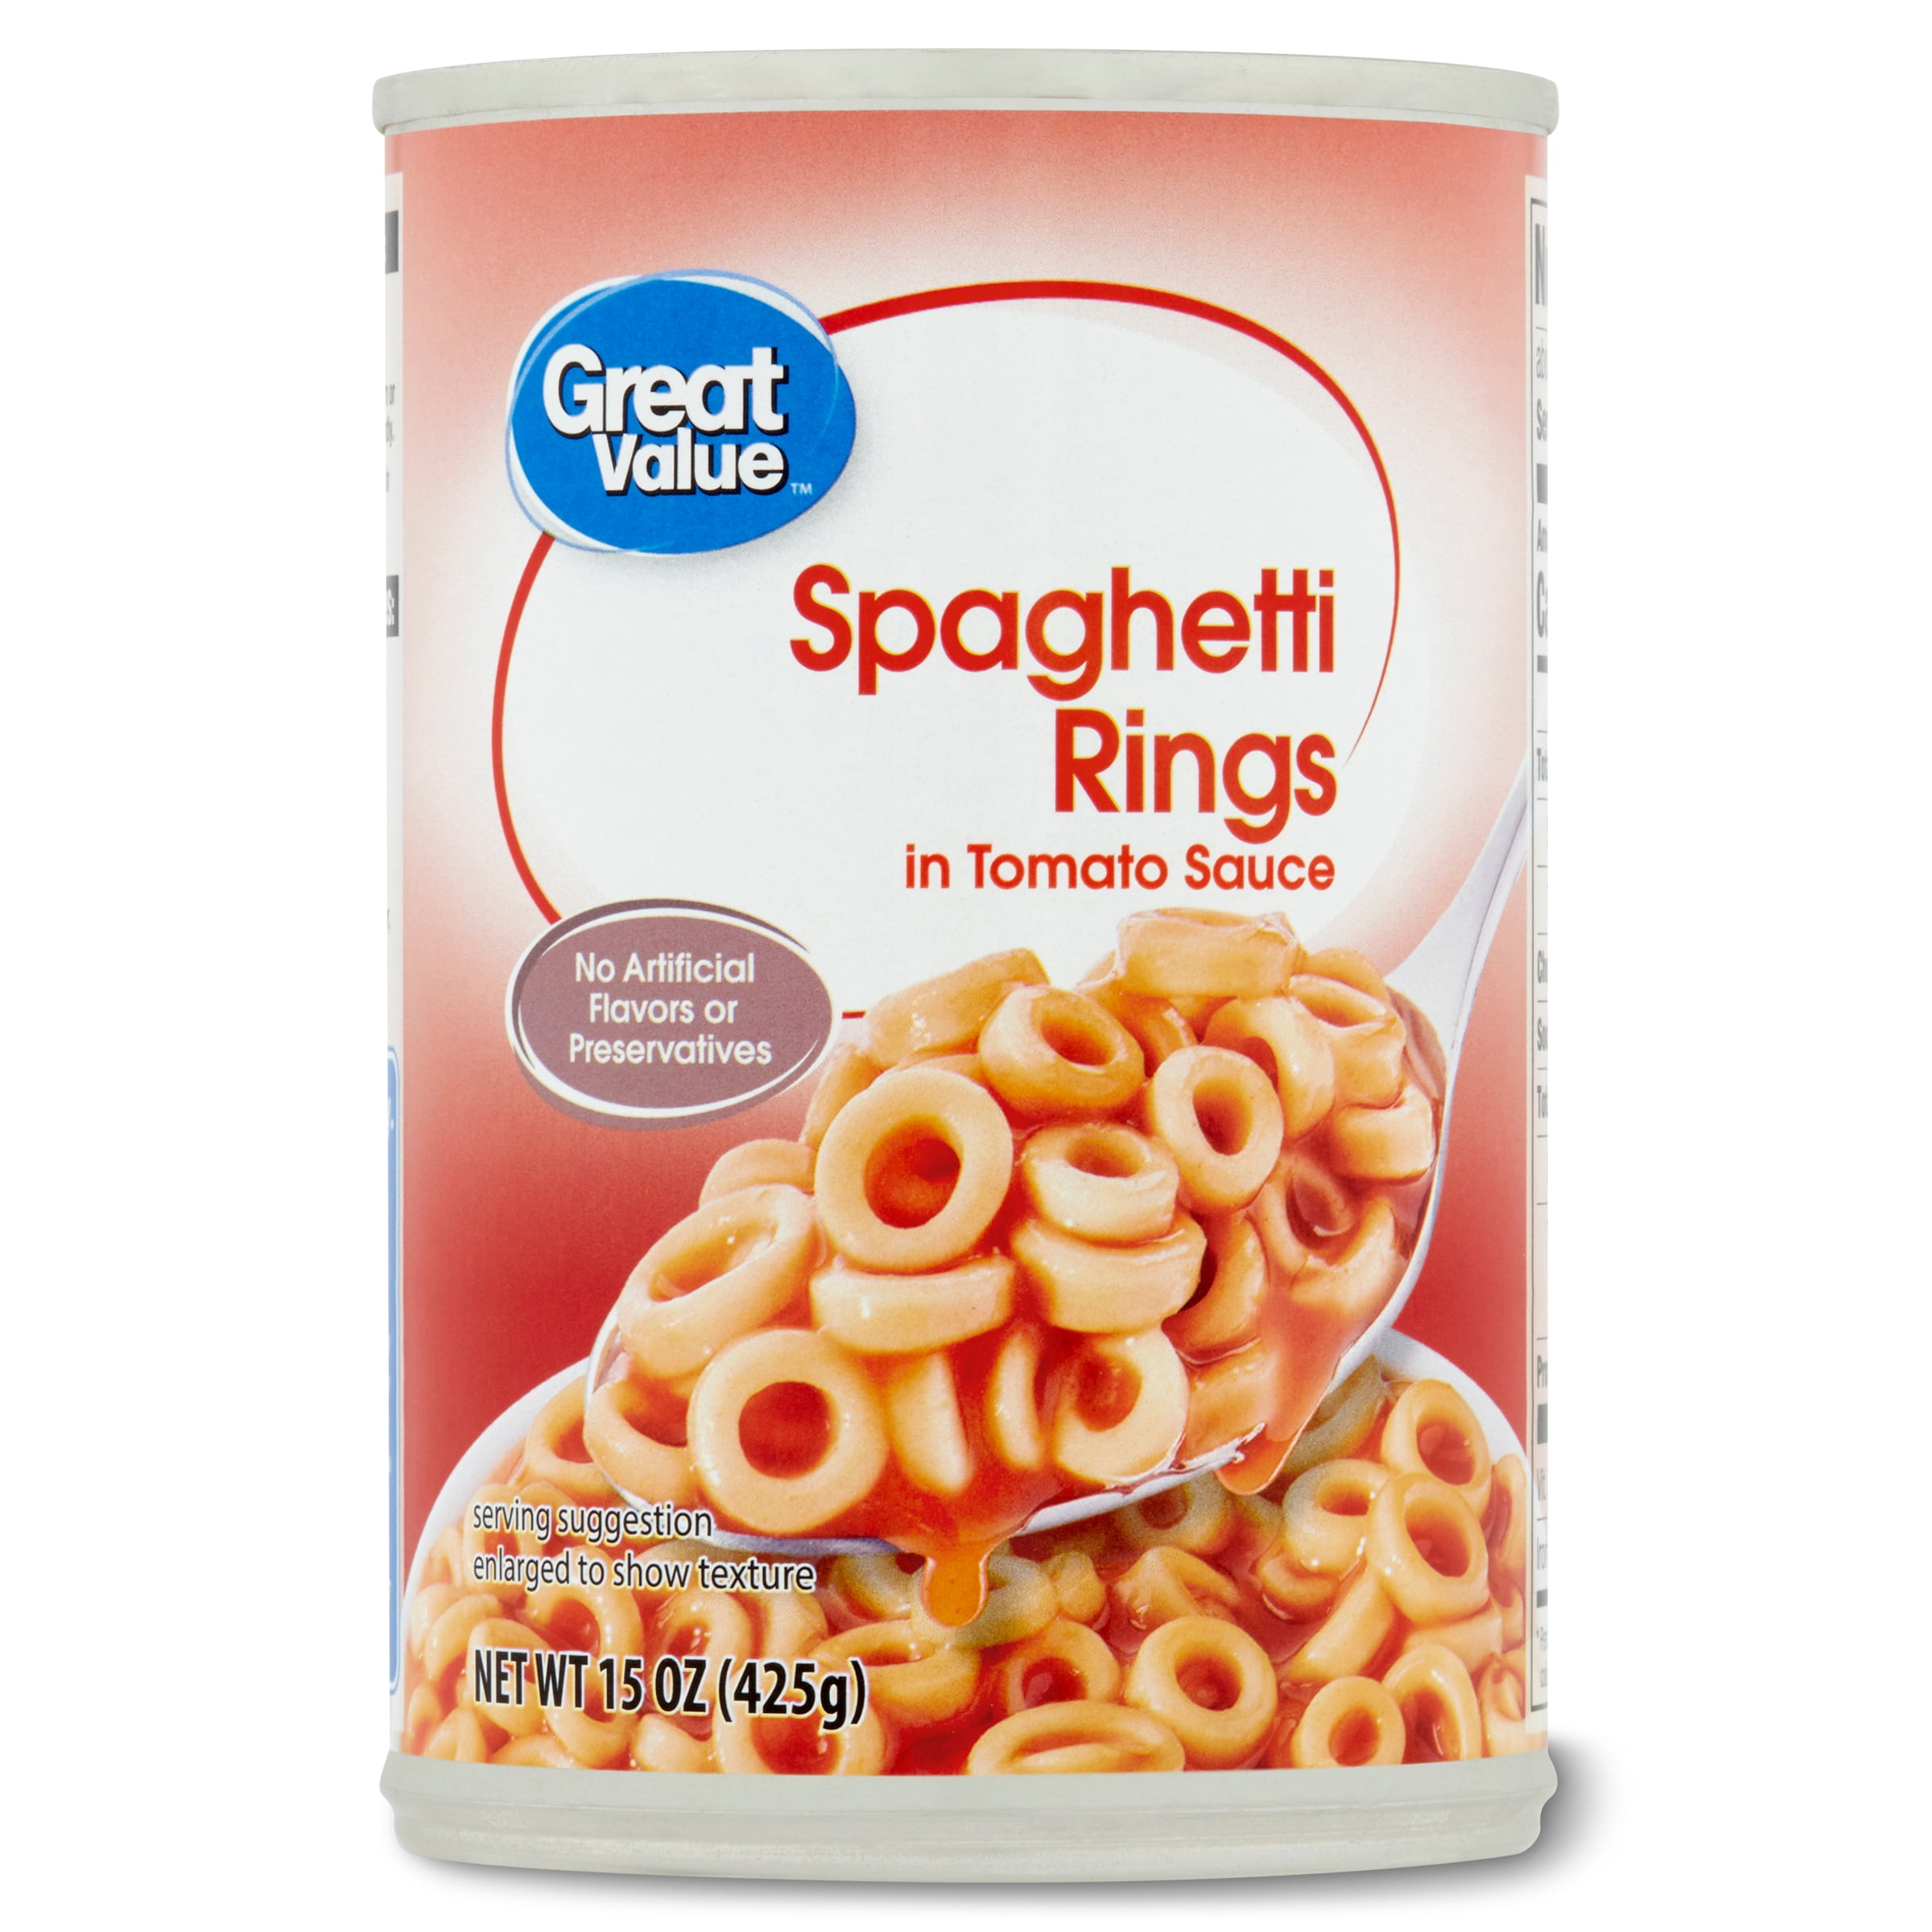 Great Value Spaghetti Rings in Tomato Sauce, 15 oz - Walmart.com